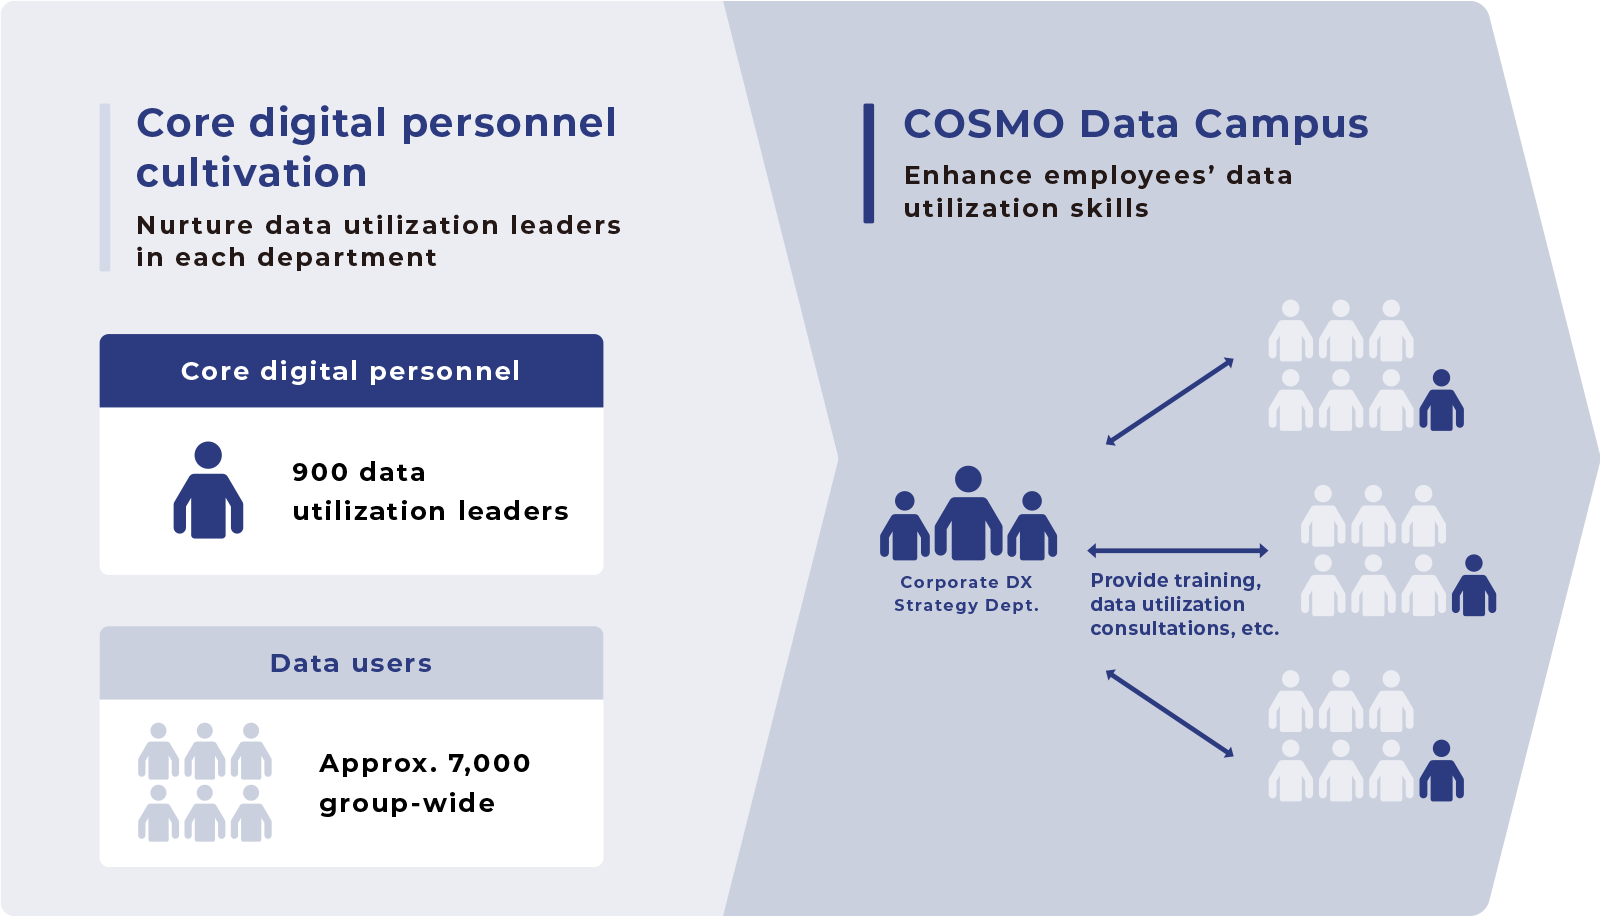 COSMO Data Campus